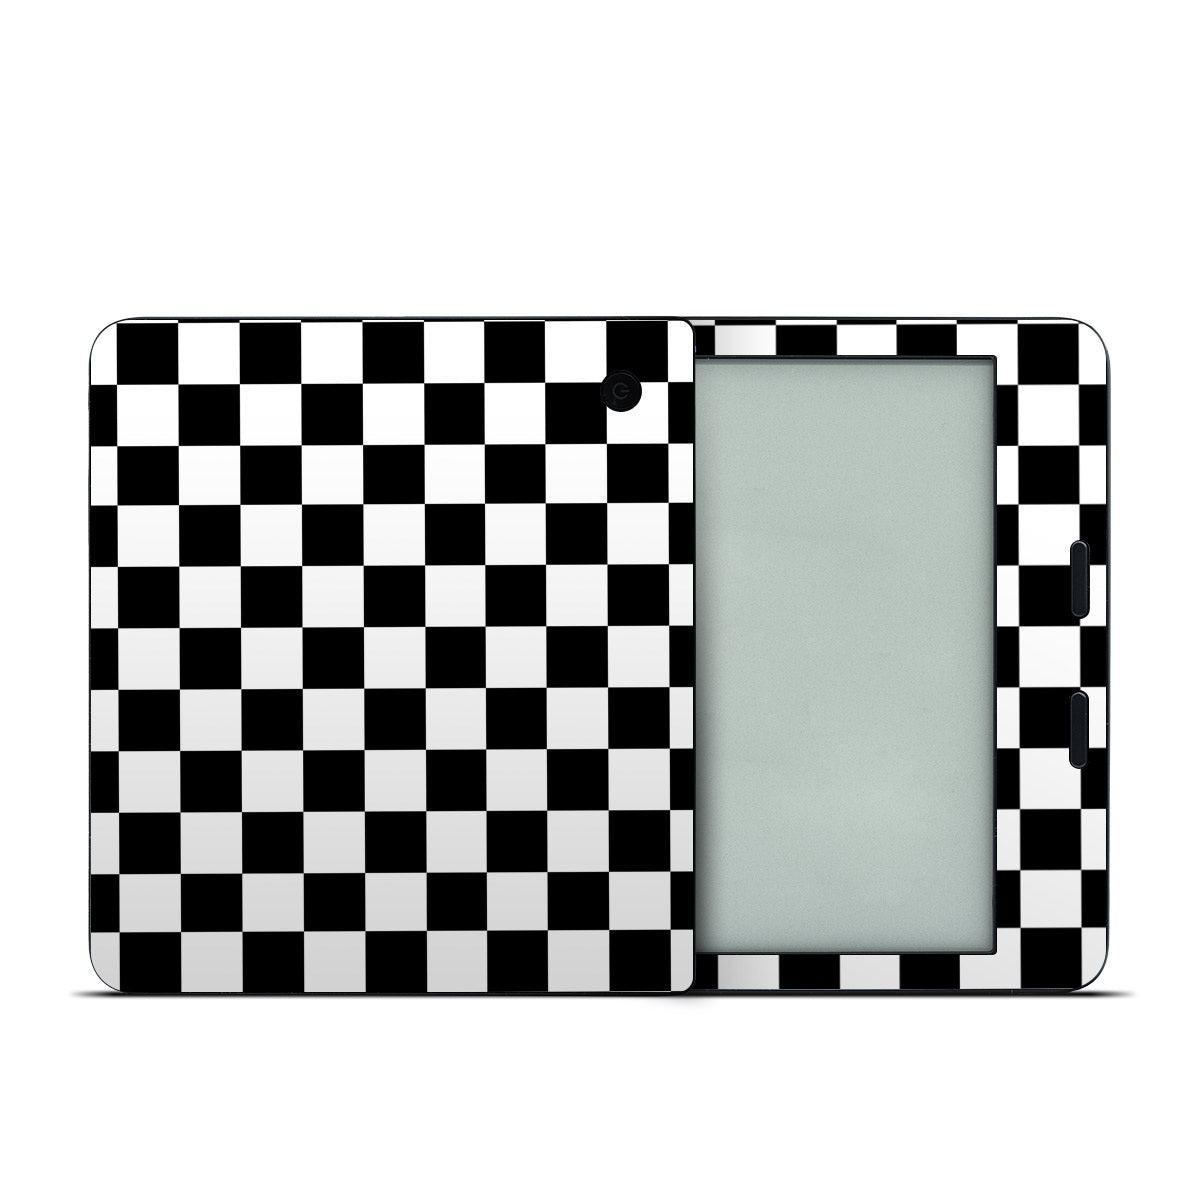 Checkers - Kobo Libra 2 Skin